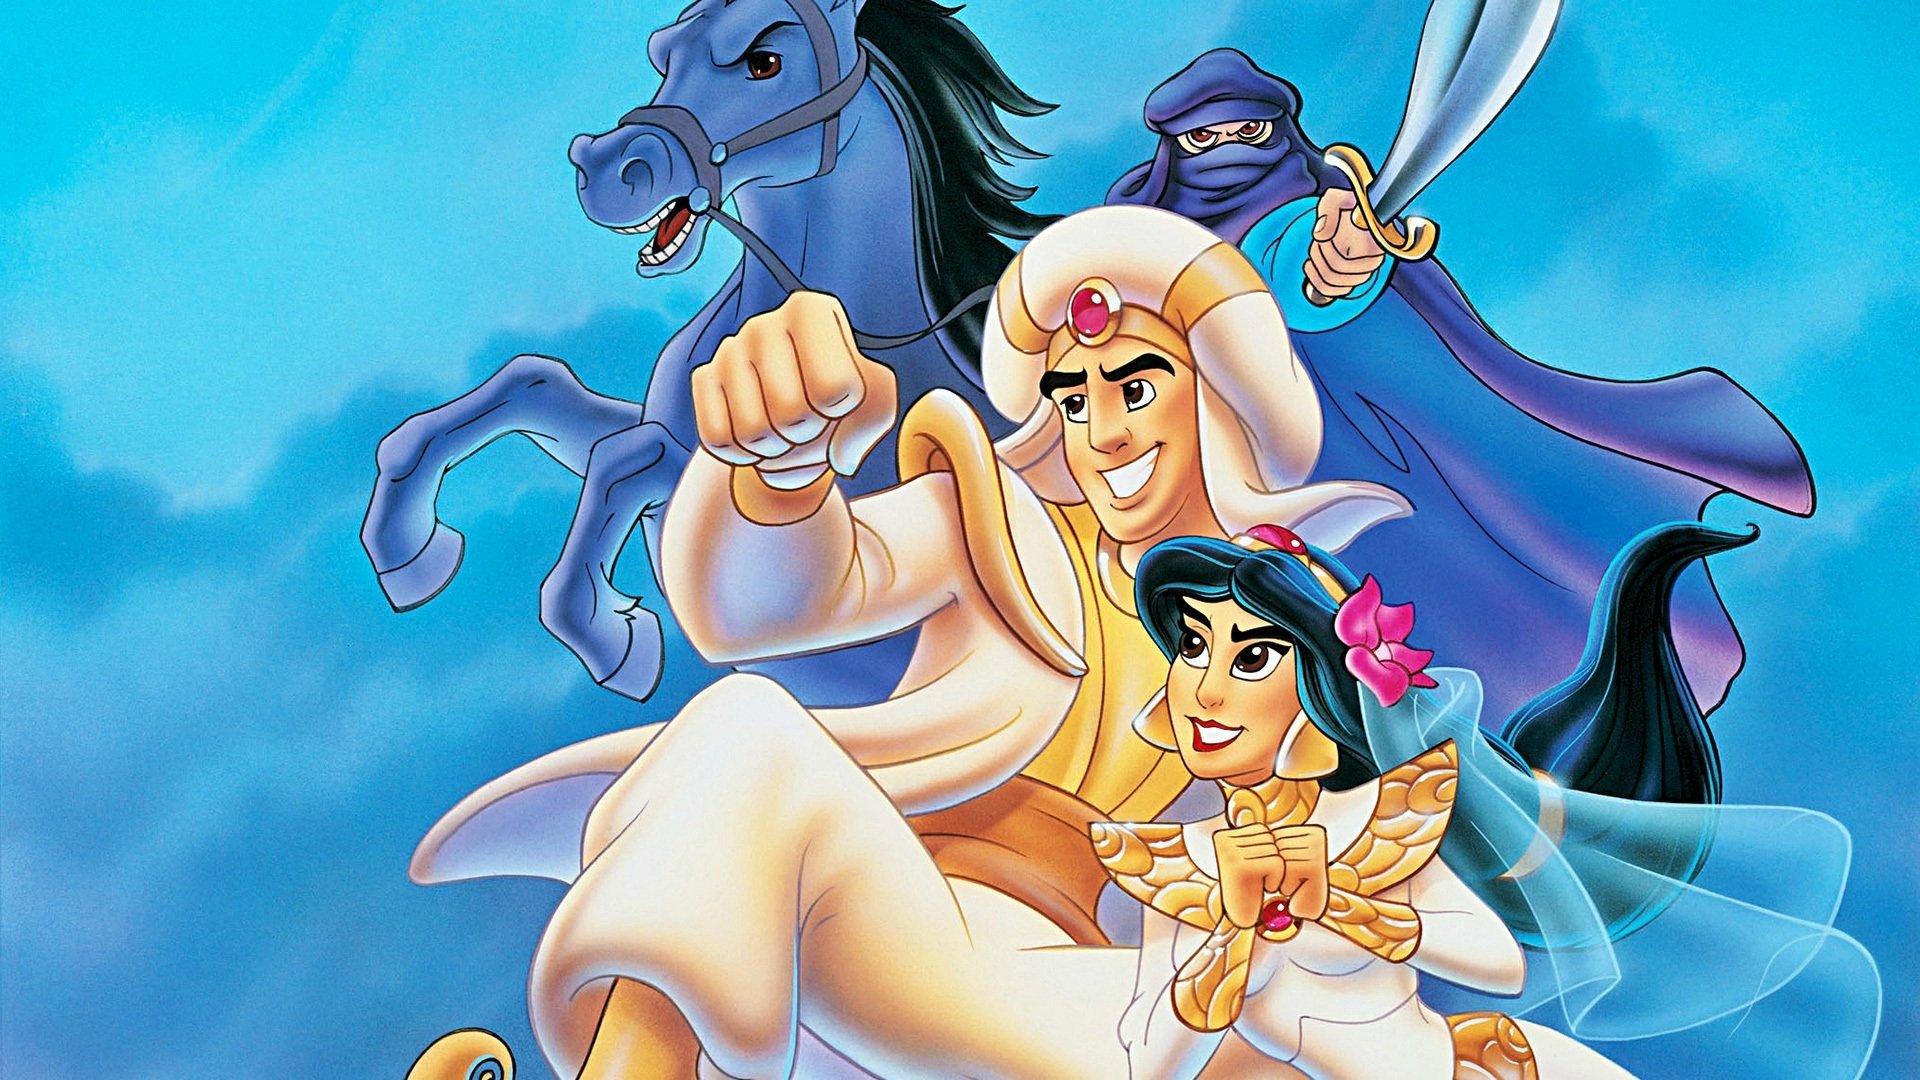 پوستری از انیمیشن علاءالدین و شاه دزدان با حضور پرنسس جاسمین